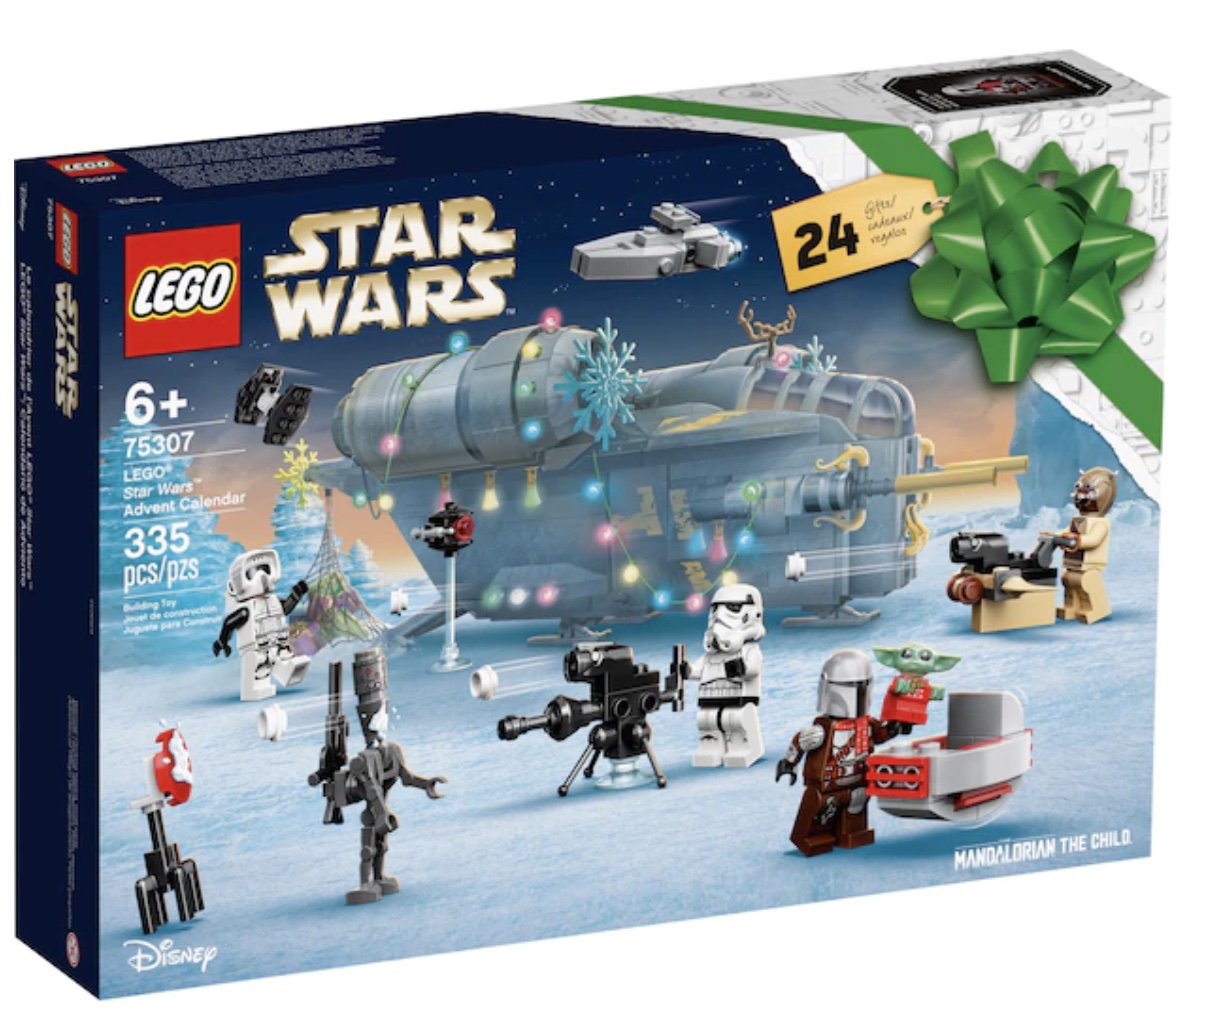 LEGO Star Wars advent calendar. 